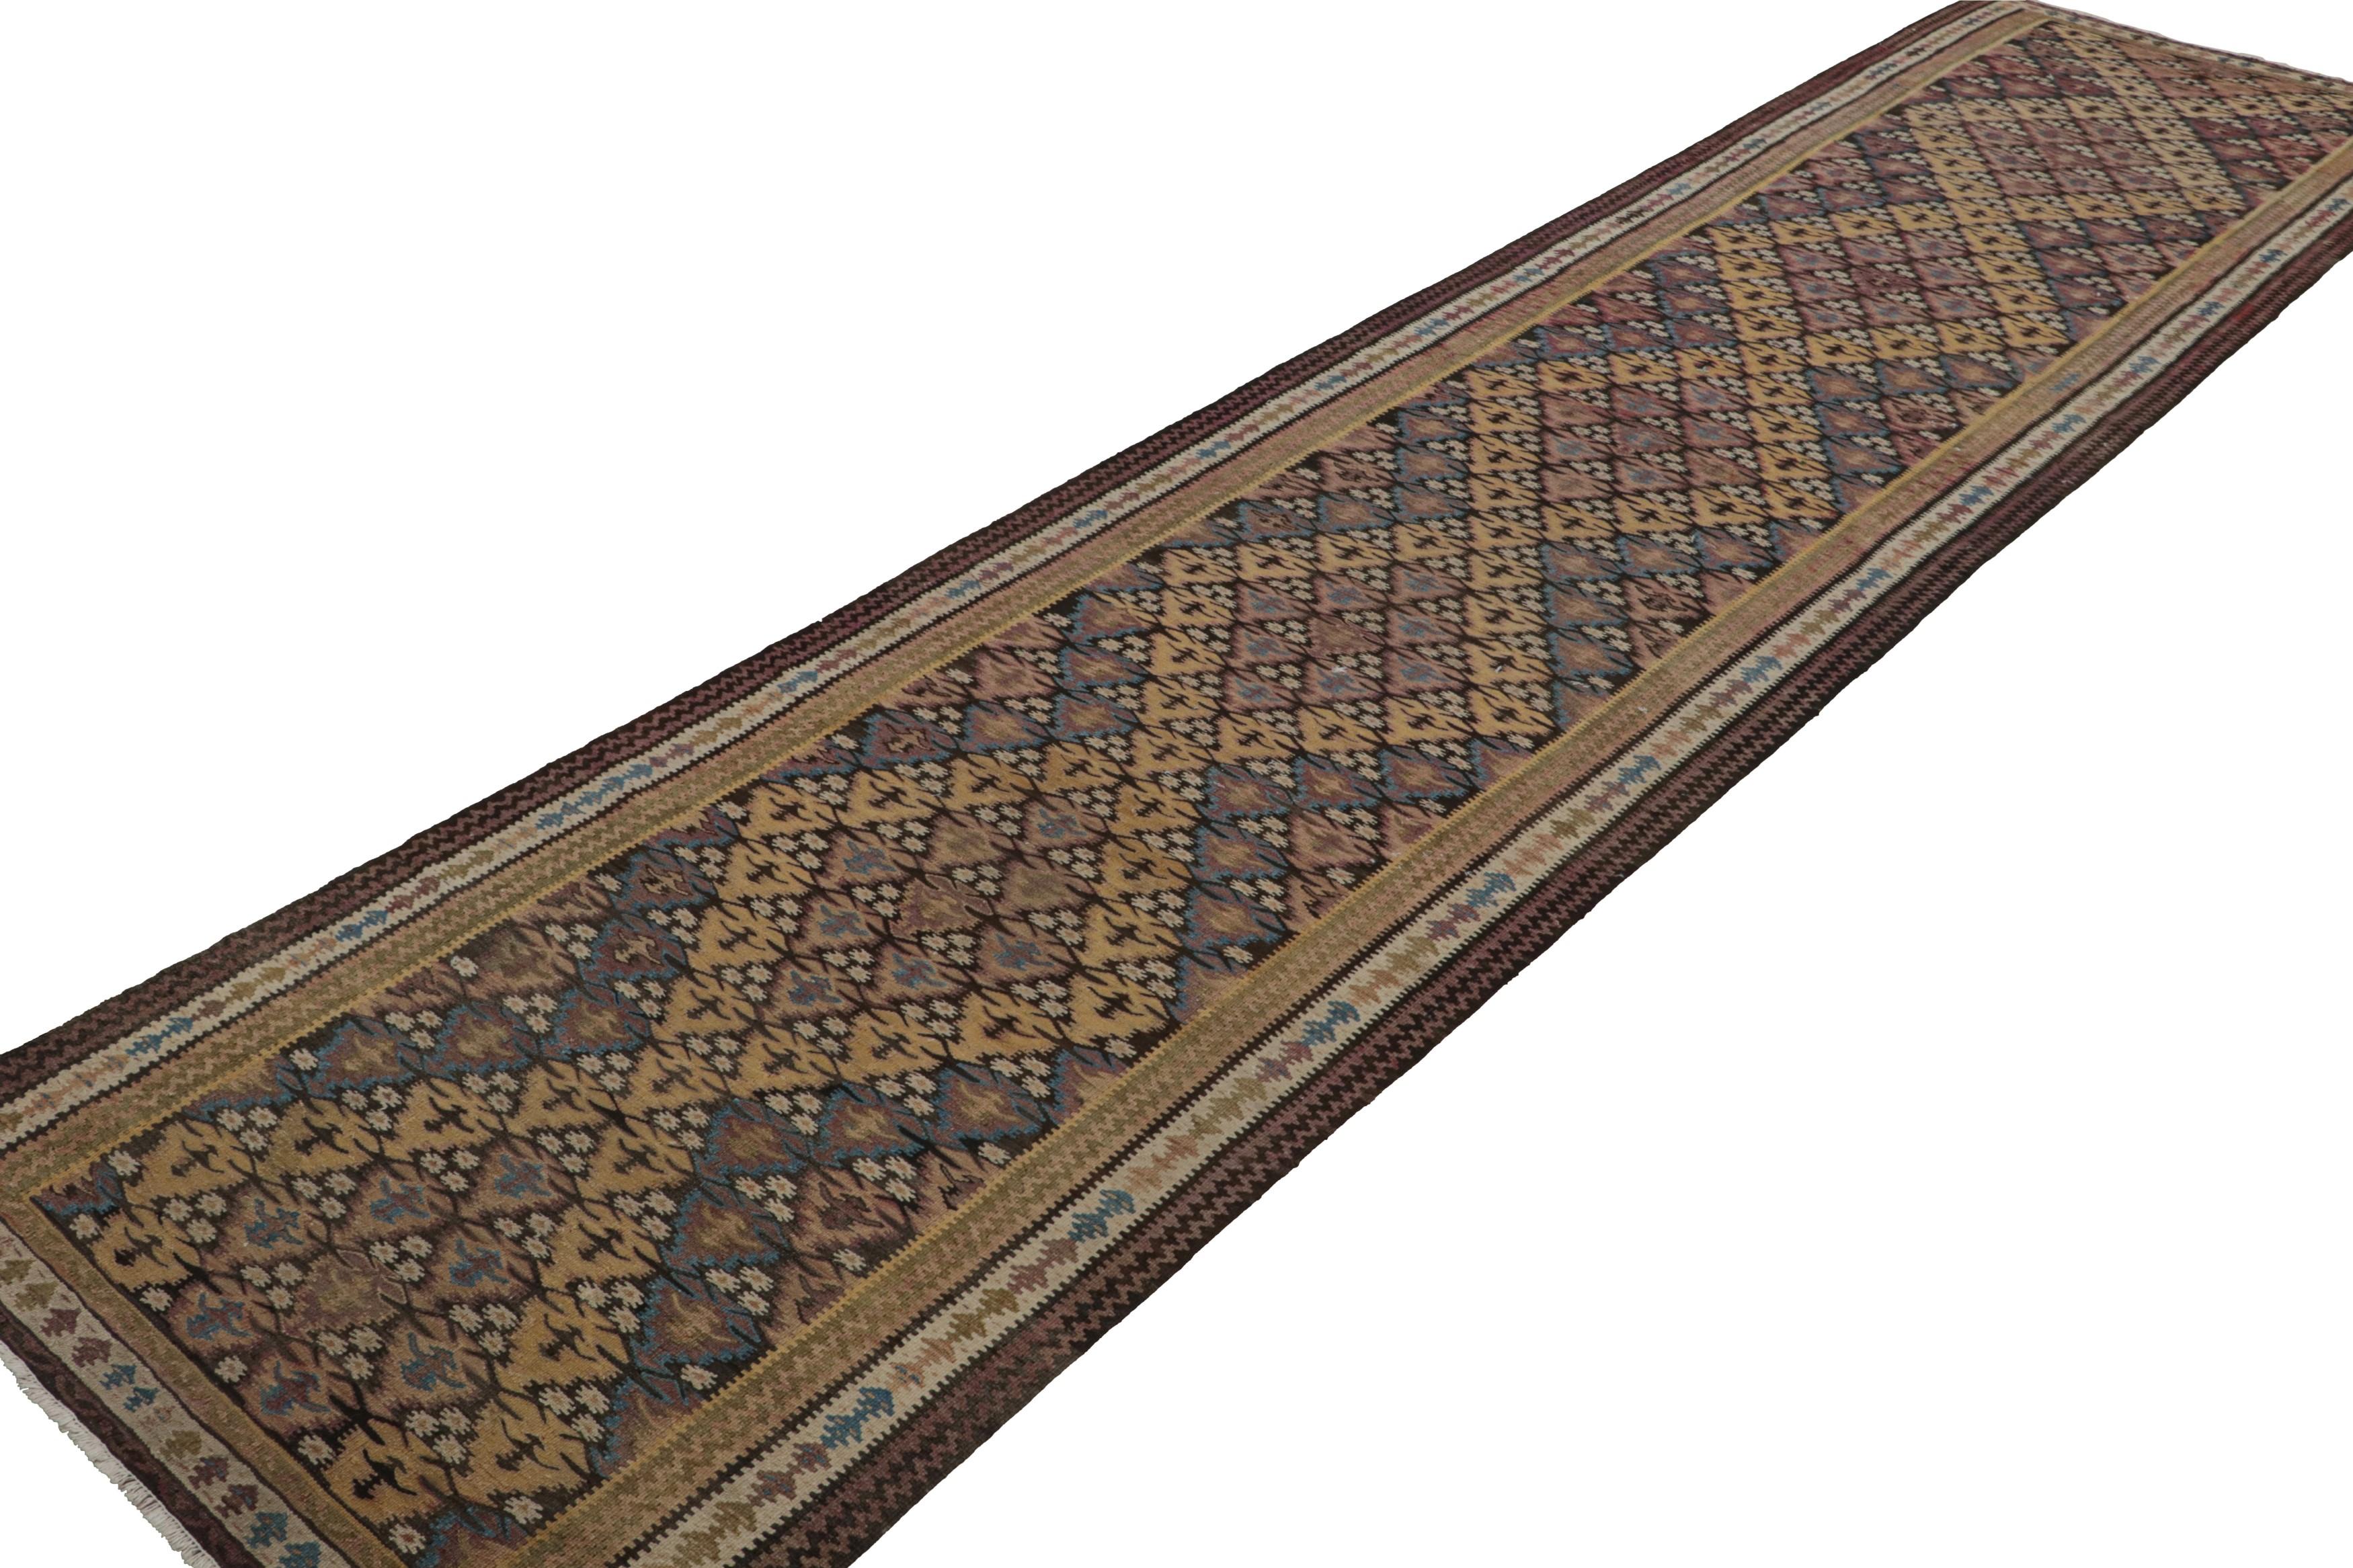 Dieser handgewebte Wollteppich (ca. 1950-1960) aus persischem Stammesmaterial mit 3x15 cm und extralangem Läufer ist eine seltene Kuration. Das Design mit seinen mosaikartigen geometrischen Mustern in Gold, Beige-Braun, Blau und Rosa erinnert an